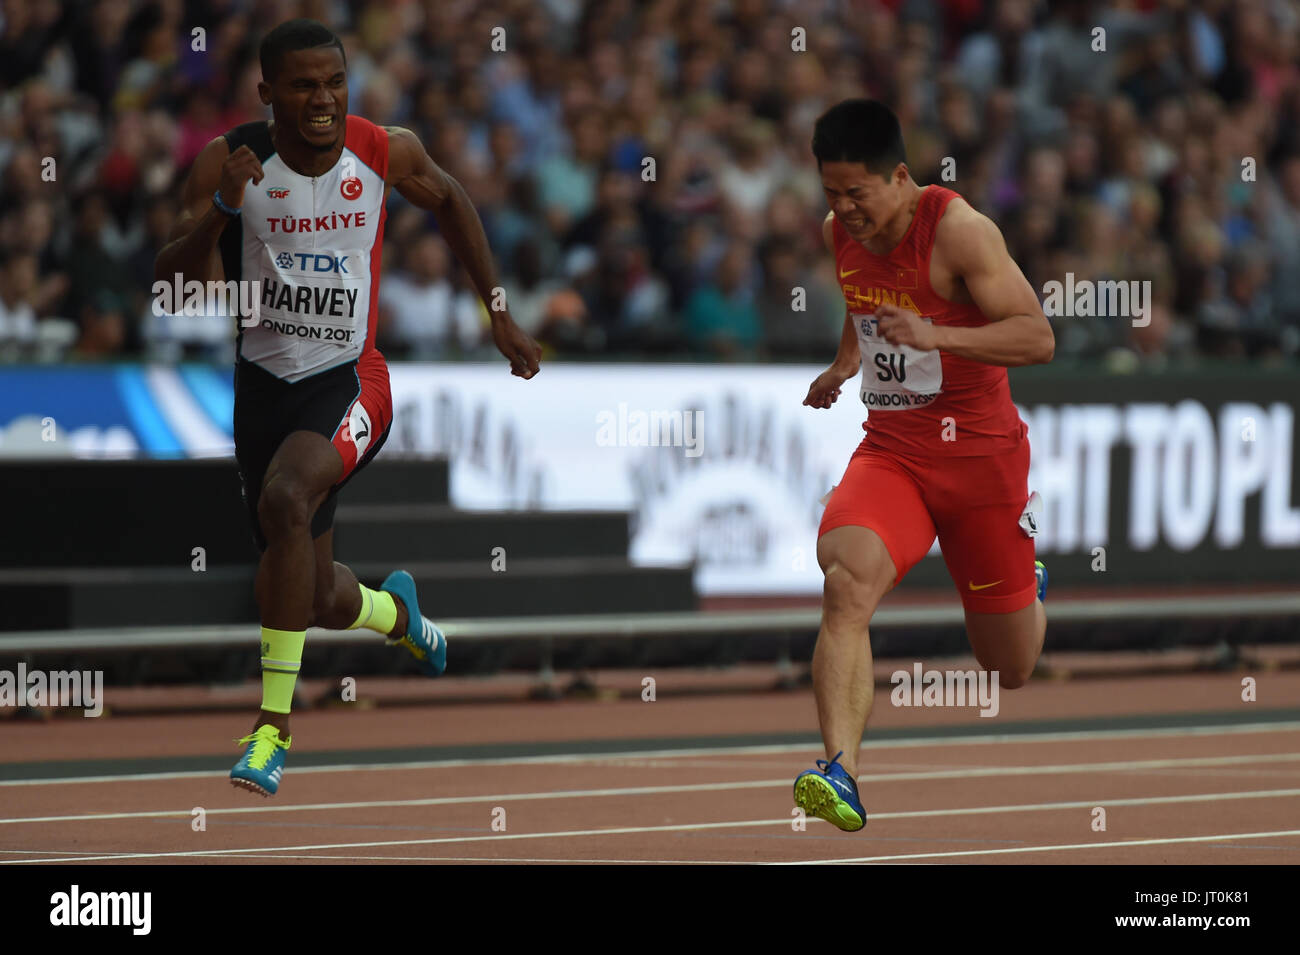 Bingtian SU und China Jak Ali HARVEY, Türkei, im 100-Meter-Halbfinale im London Stadium in London am 5. August 2017 an die IAAF World Championships Athletics 2017. Stockfoto